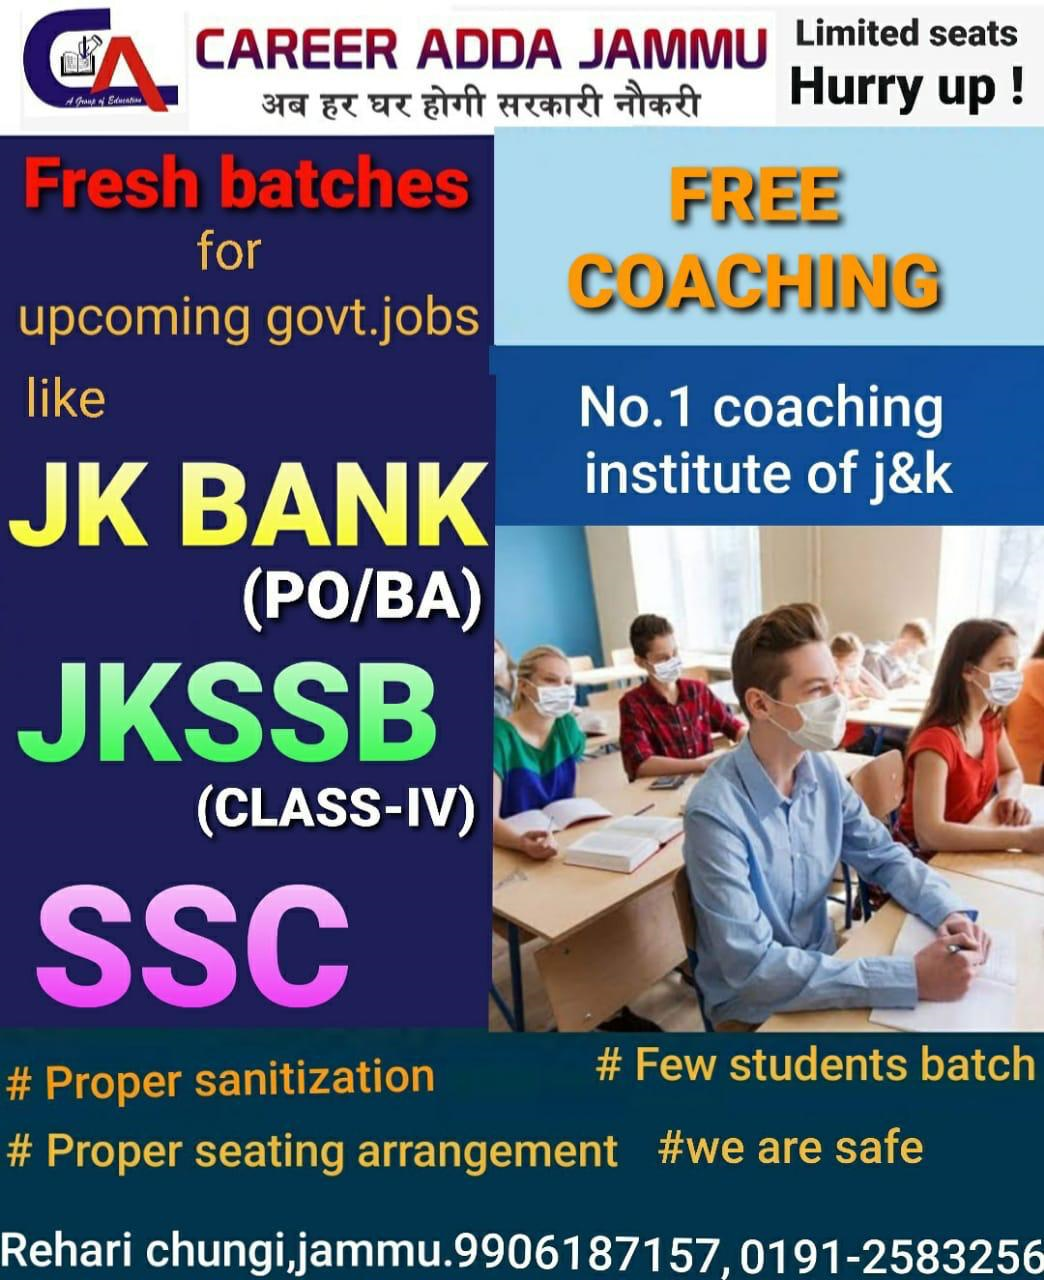 Career Adda Jammu, going to start offline classes, FREE Coaching.